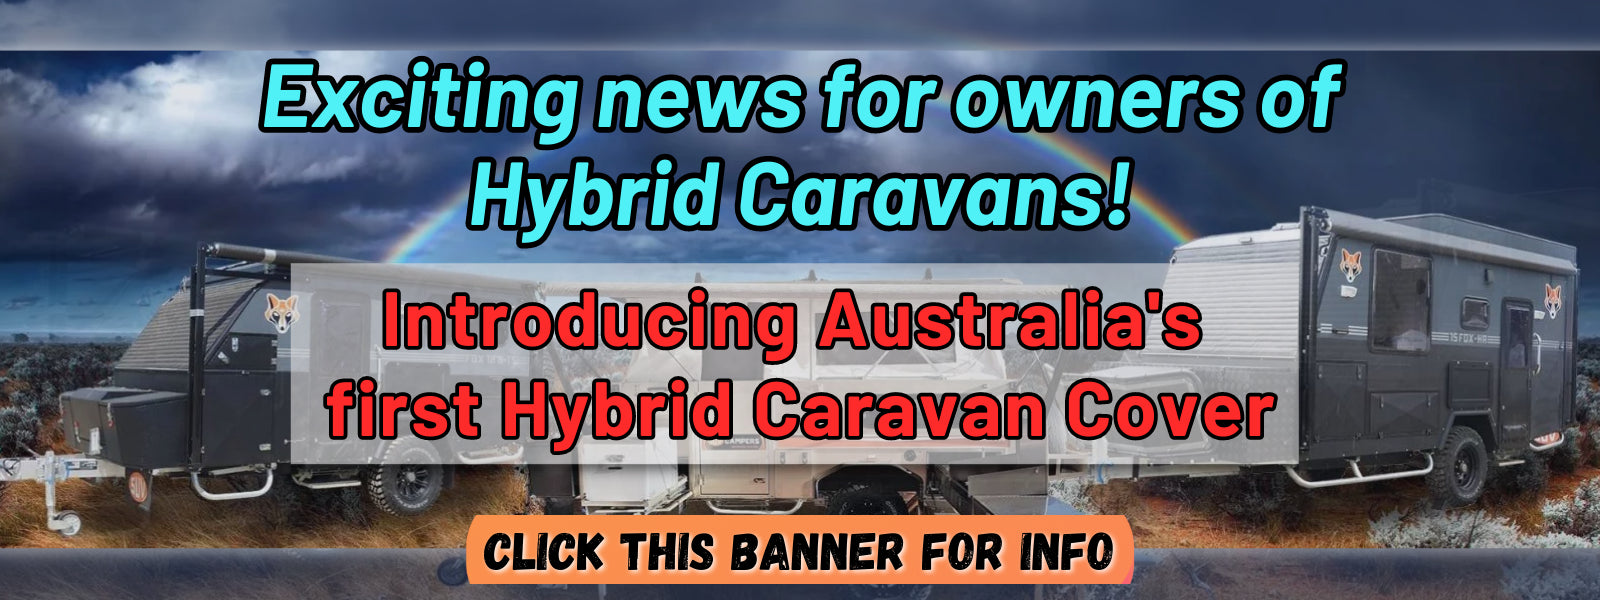 Australia's 1st Hybrid Caravan Cover